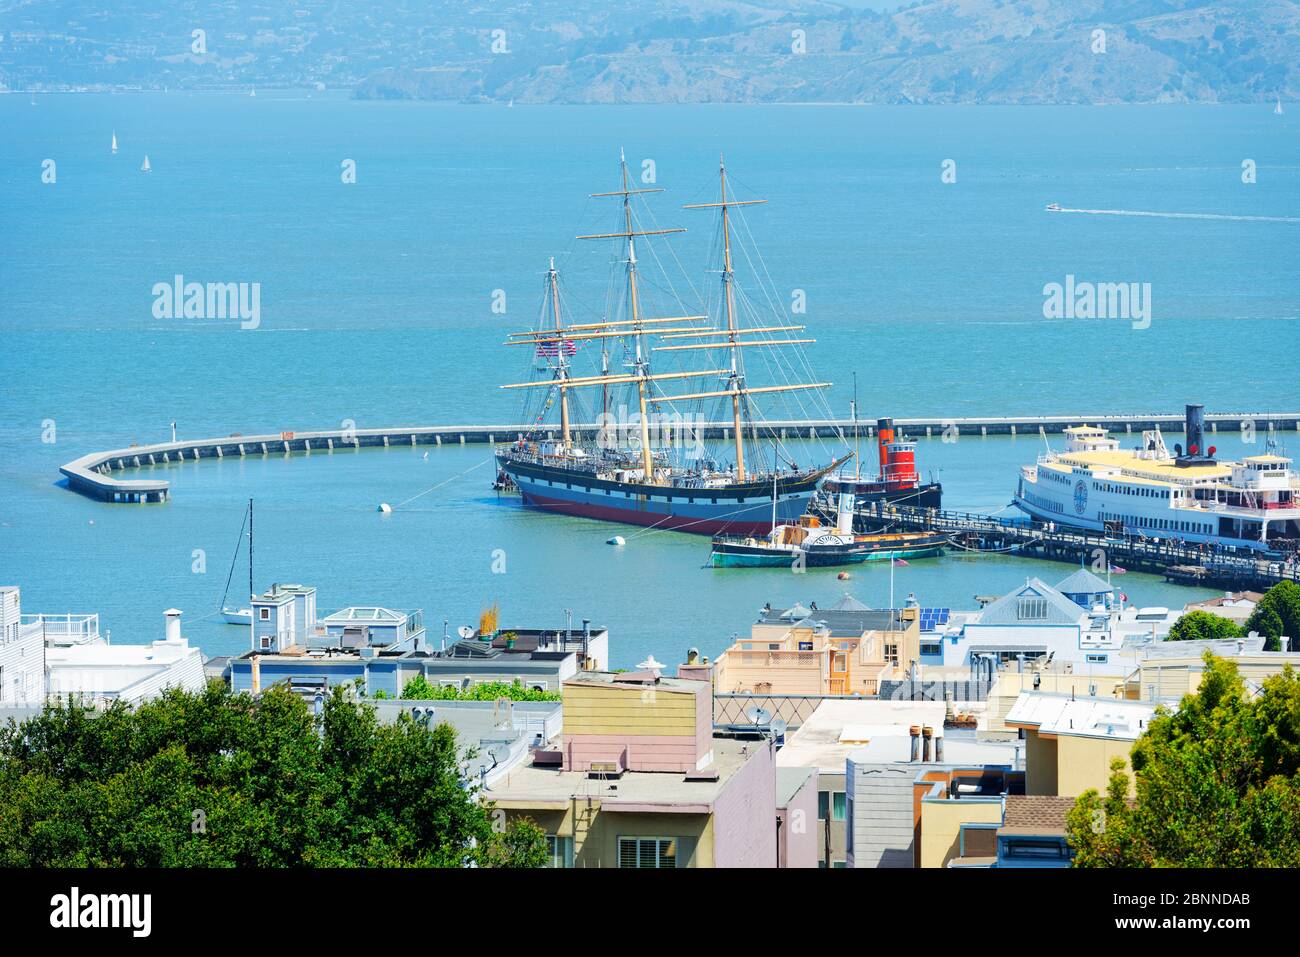 San Francisco Bay and Alcatraz Island, San Francisco, California, USA Stock Photo